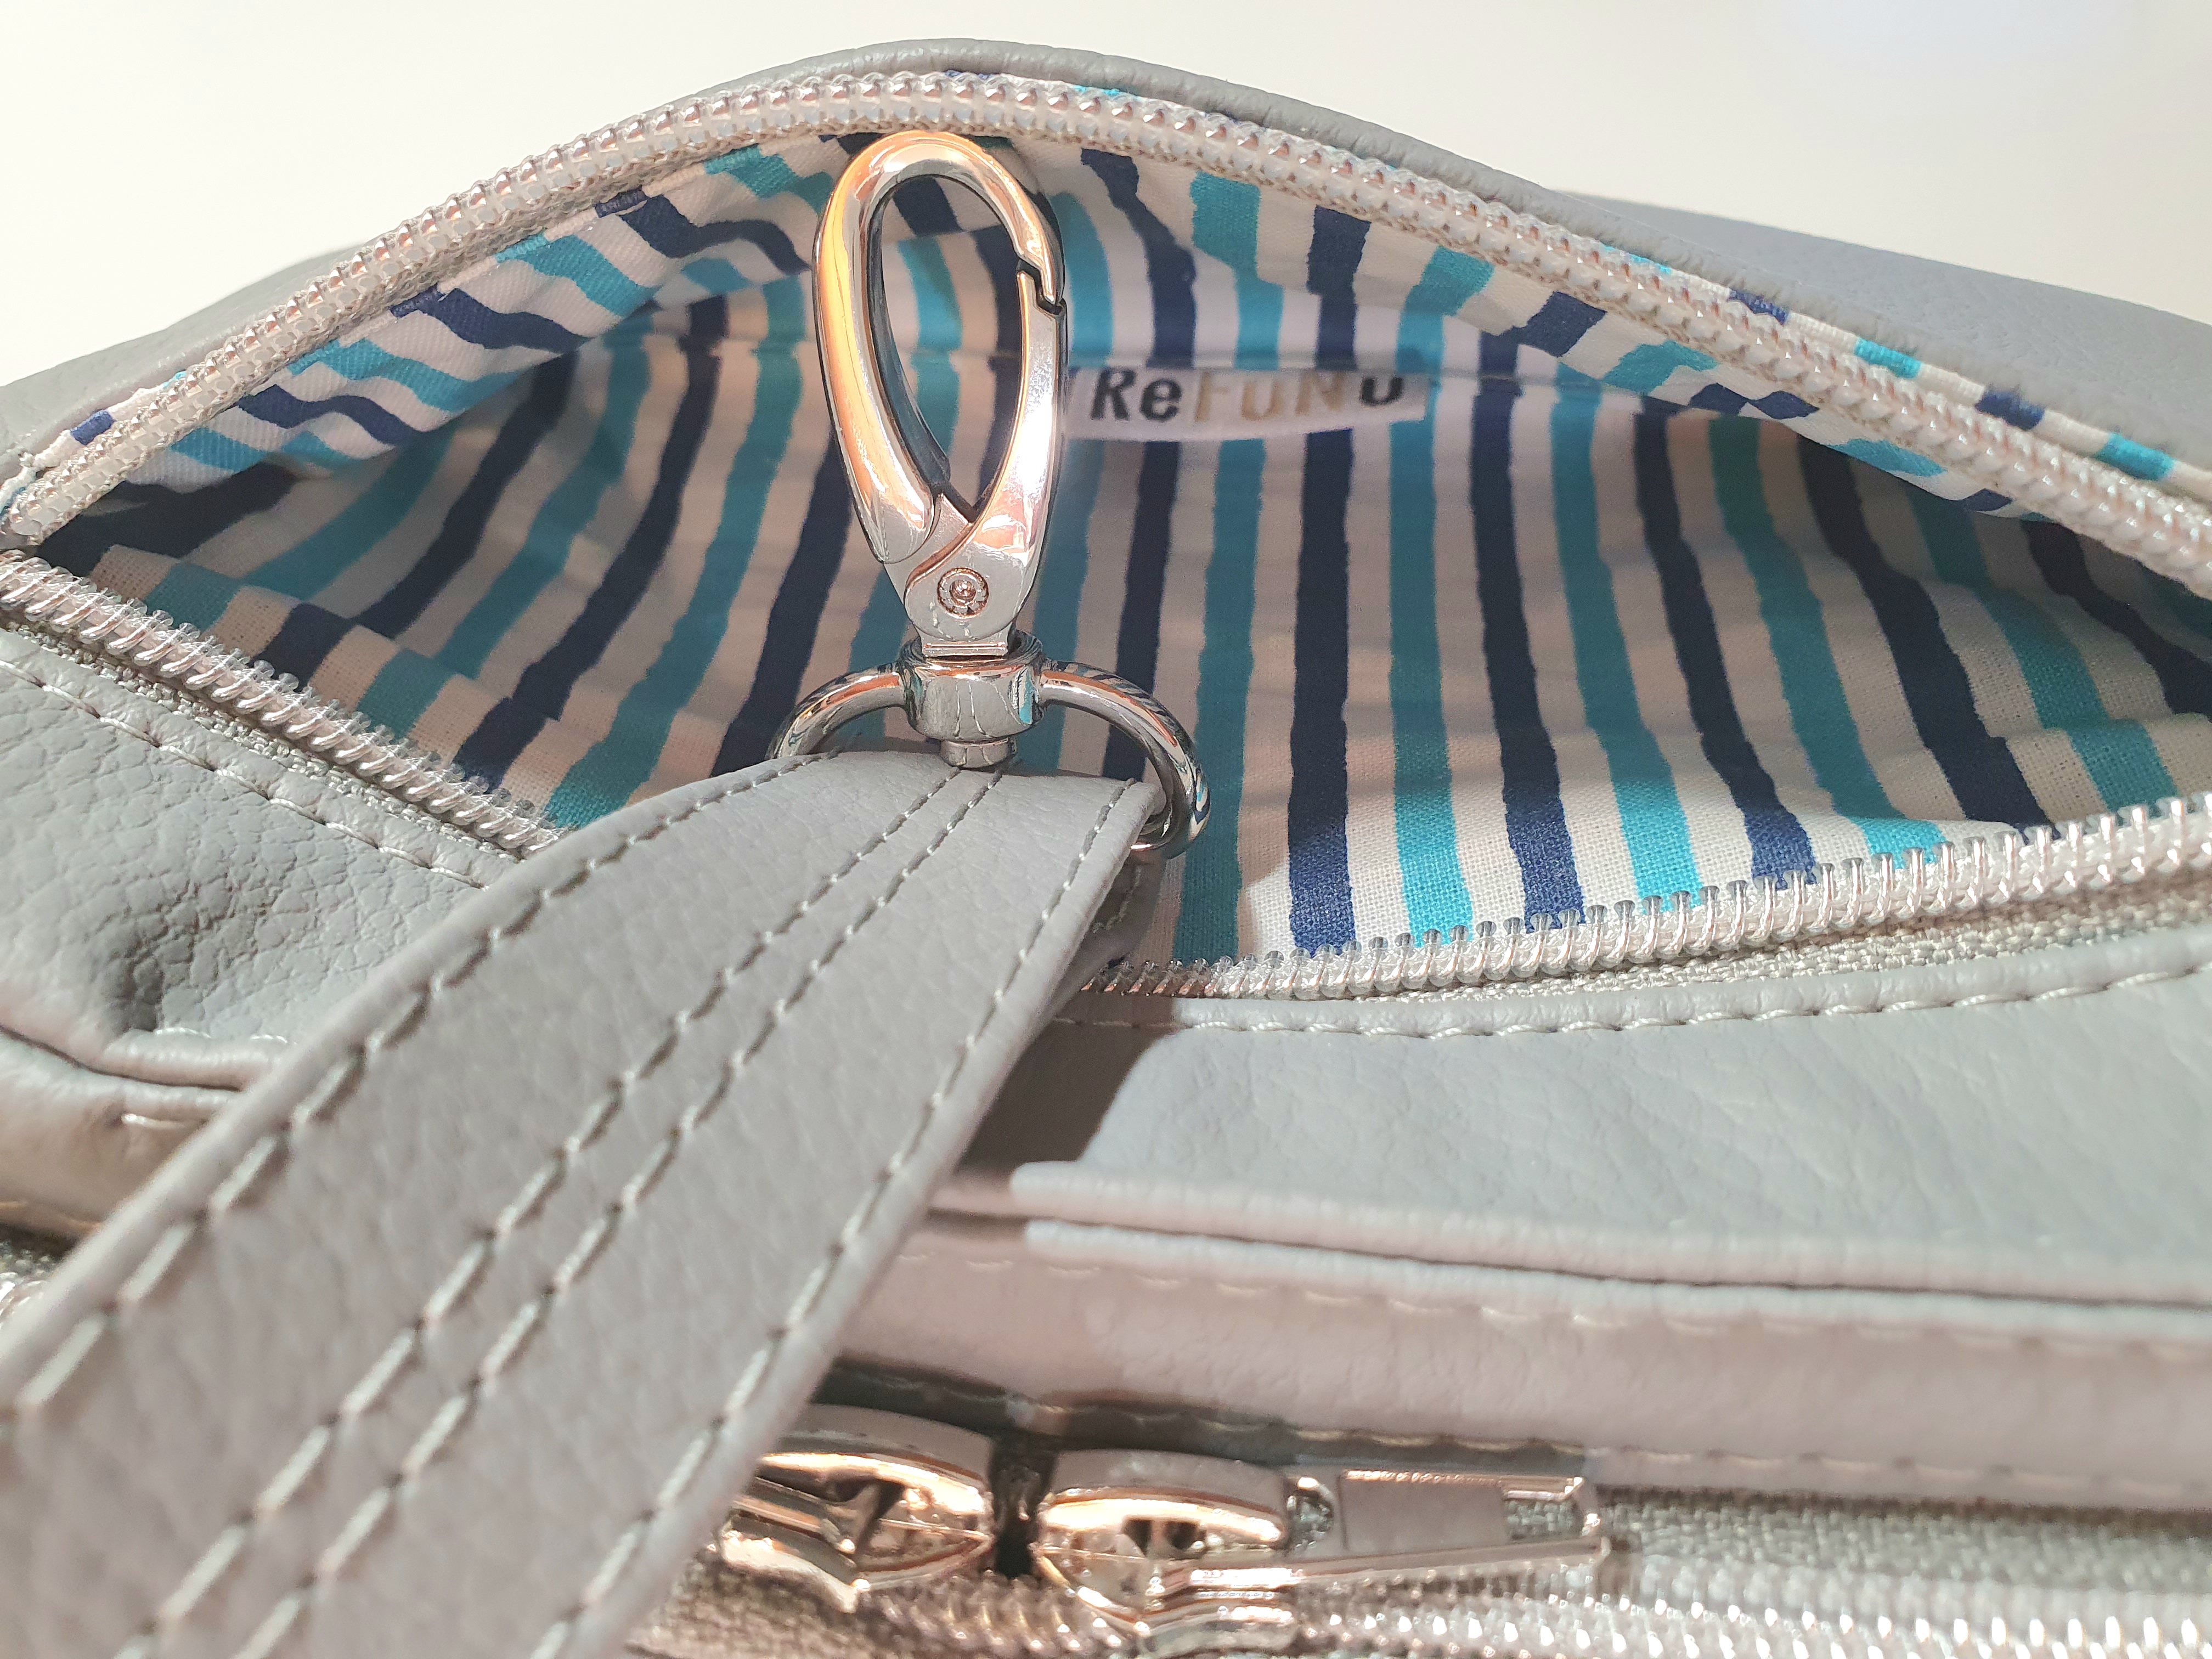 ReFuNu Versatile Bag Small in light grey - outer zipper pocket